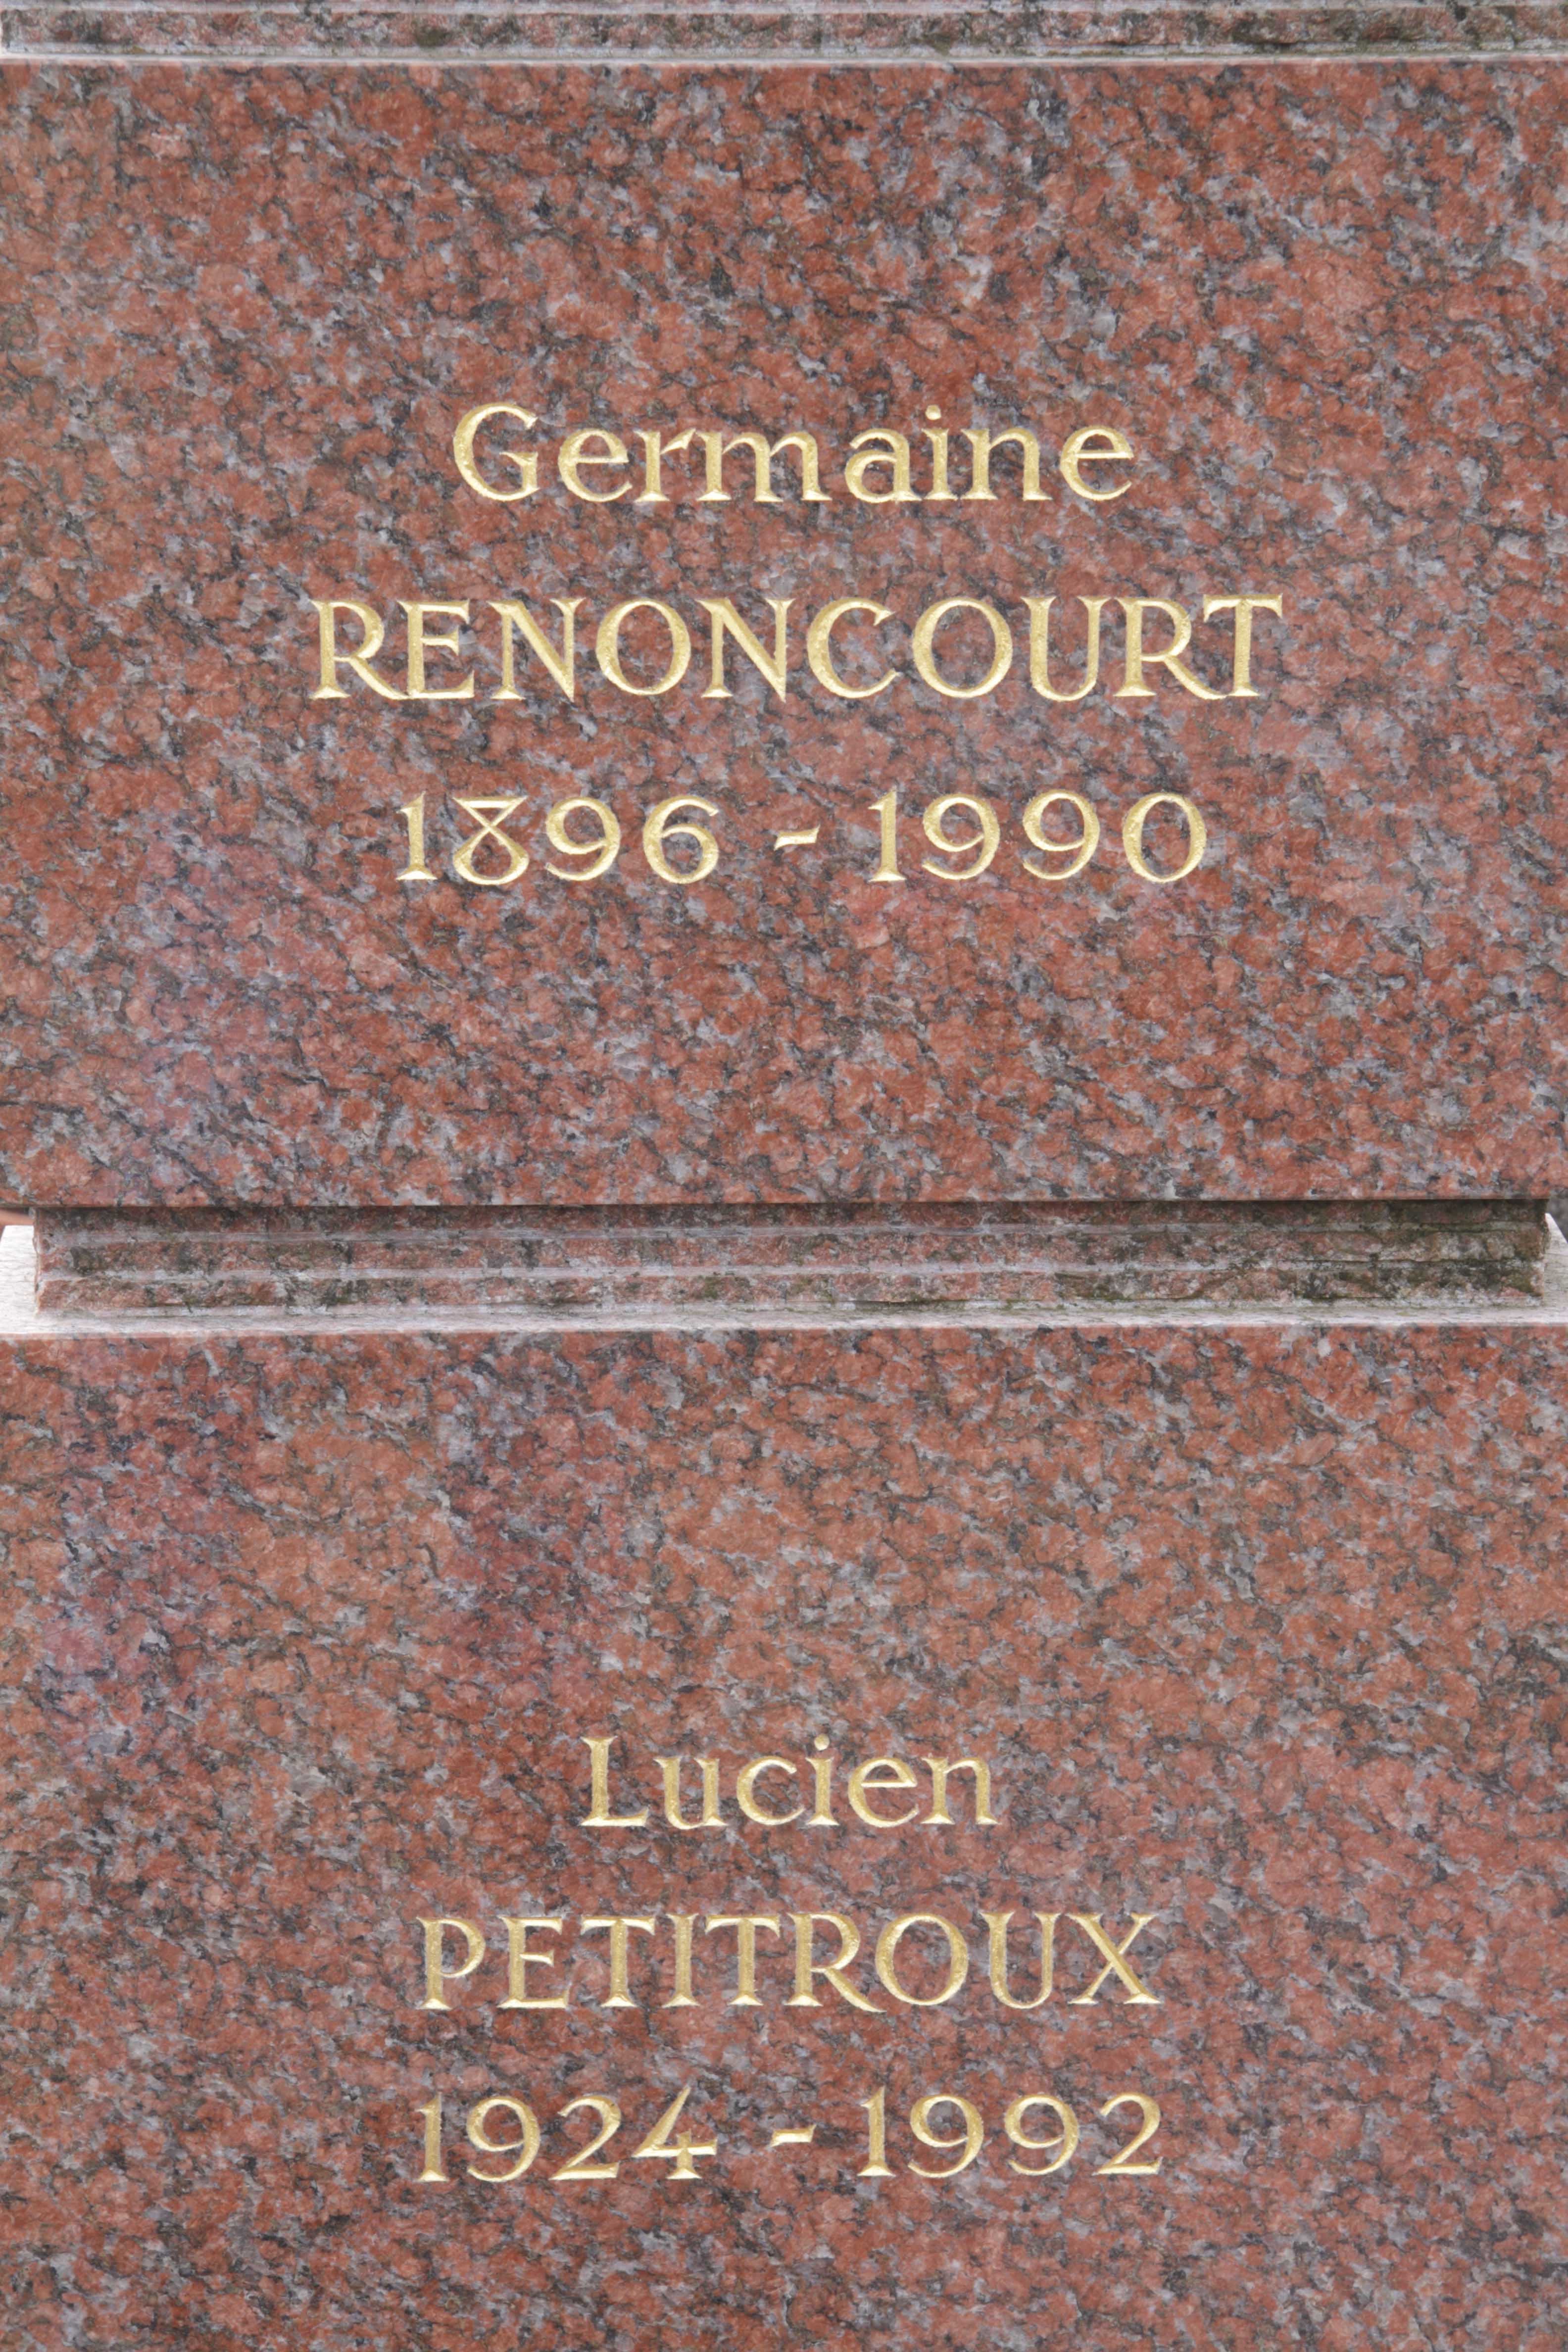 sepulture_renoncourt_germaine.jpg